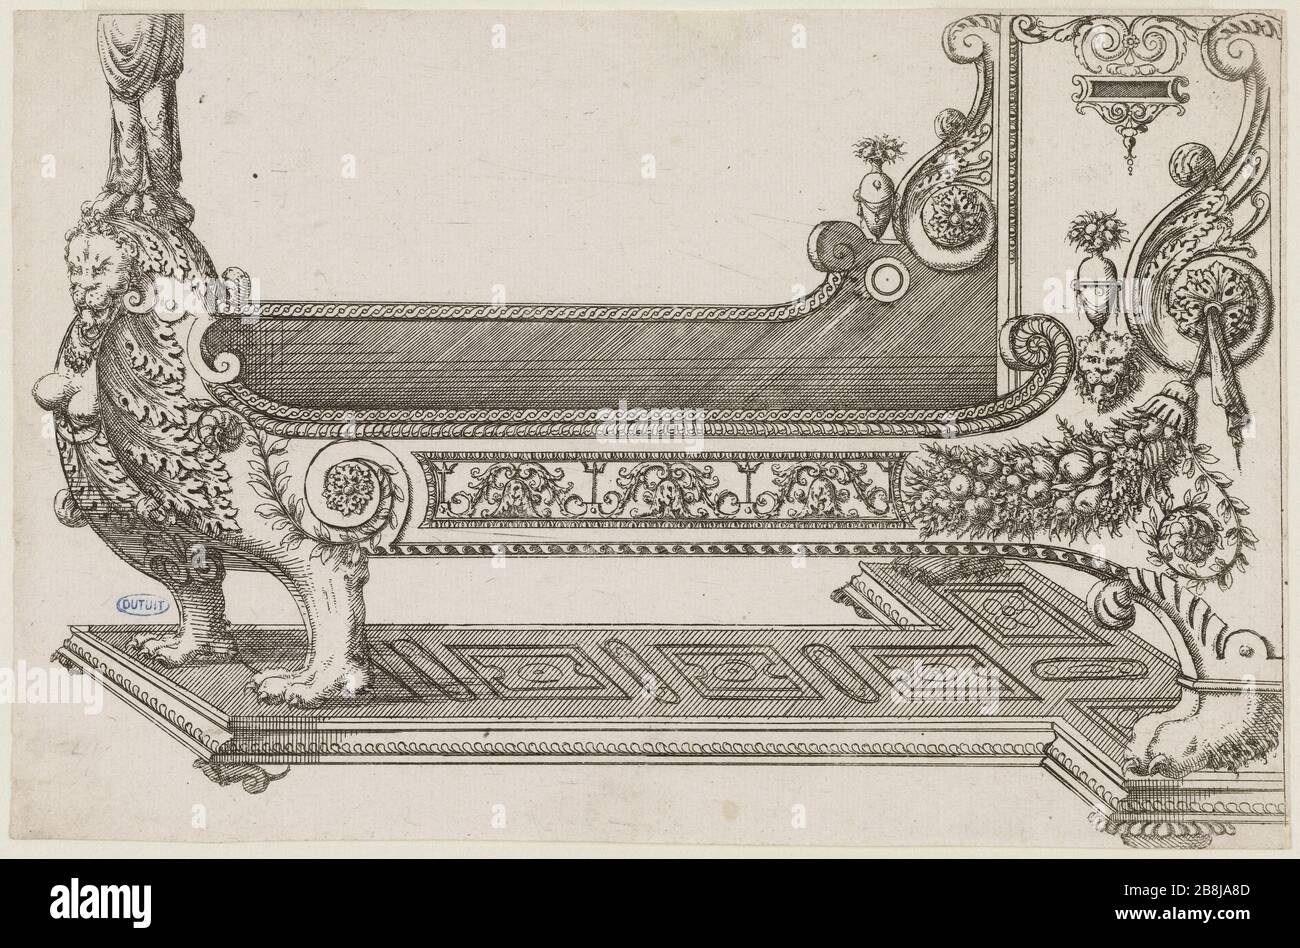 furniture boards Collection: Lit. First bed of a 2 Jacques Androuet du  Cerceau (1515-1584). "Recueil de planches de mobilier : Lit. Premier lit  d'une suite de 2". Eau-forte. 1575. Musée des Beaux-Arts